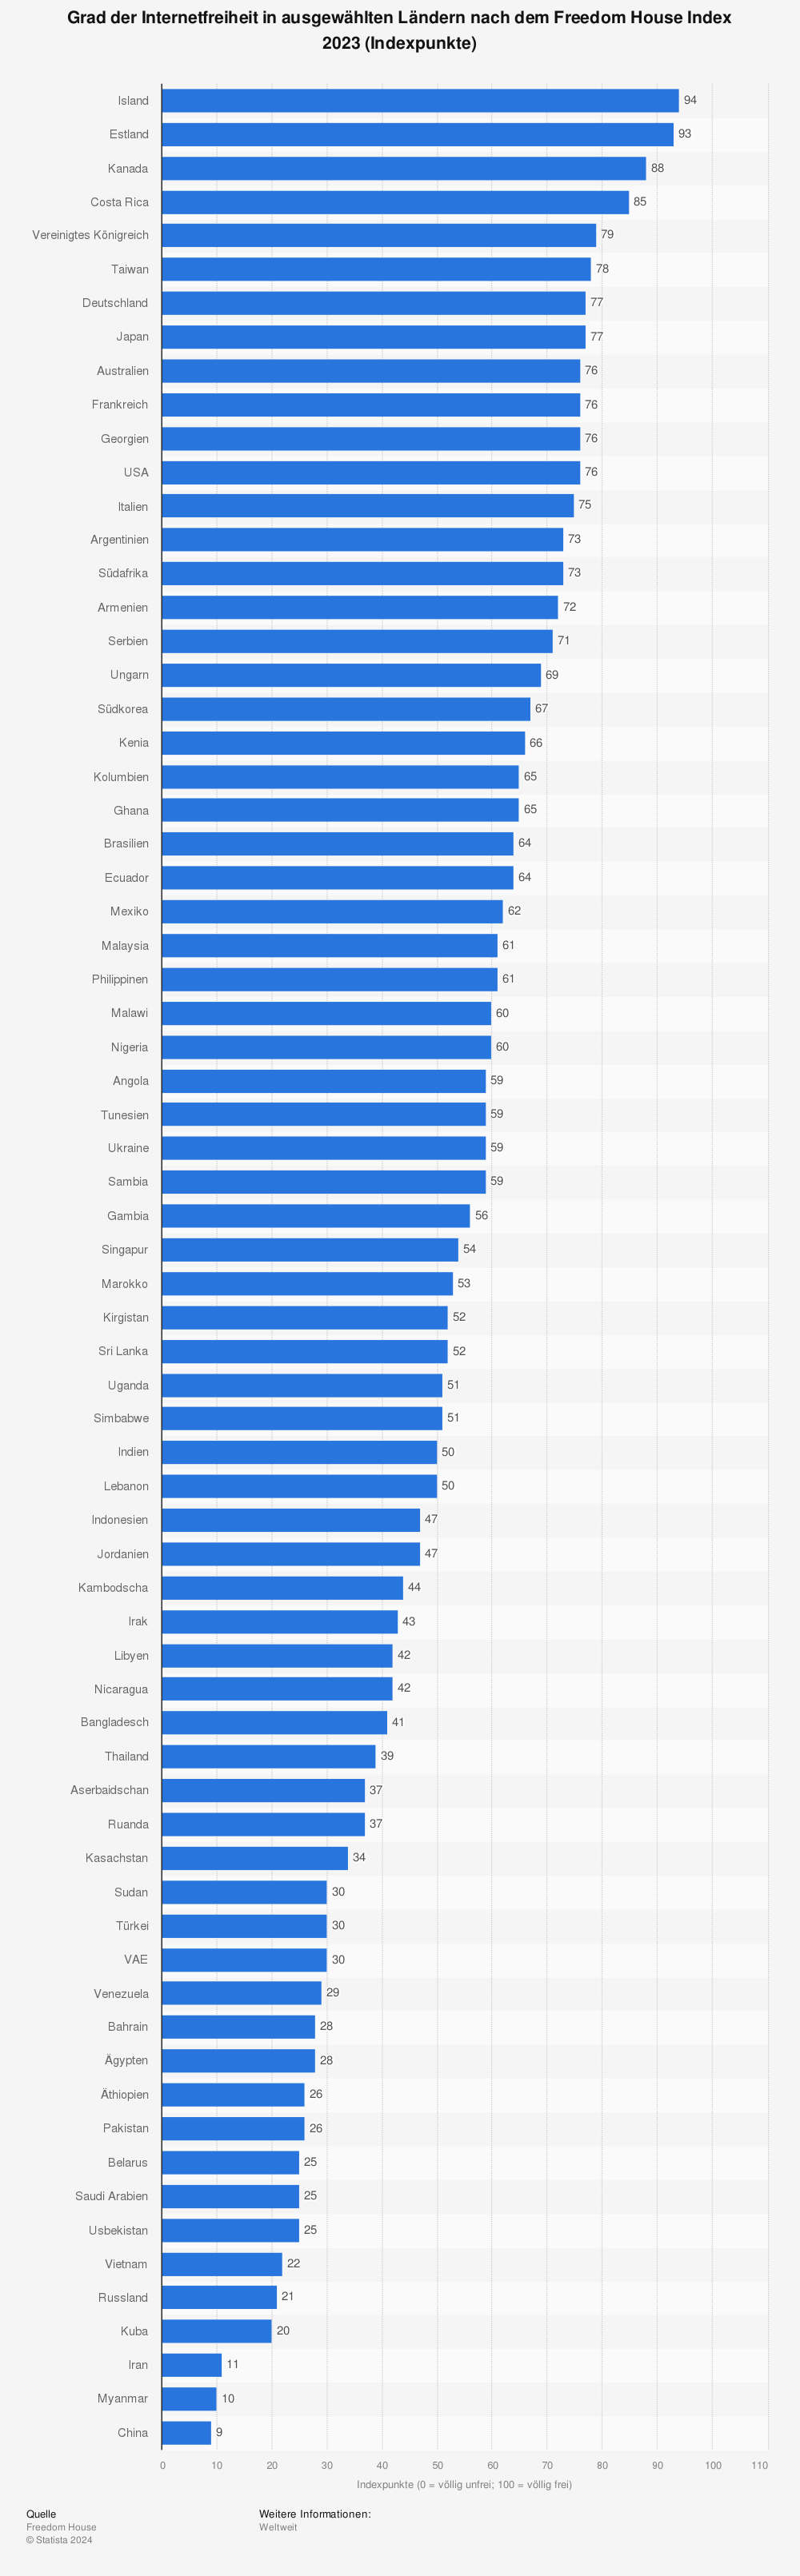 Statistik: Grad der Internetfreiheit in ausgewählten Ländern nach dem Freedom House Index 2019 (Indexpunkte) | Statista